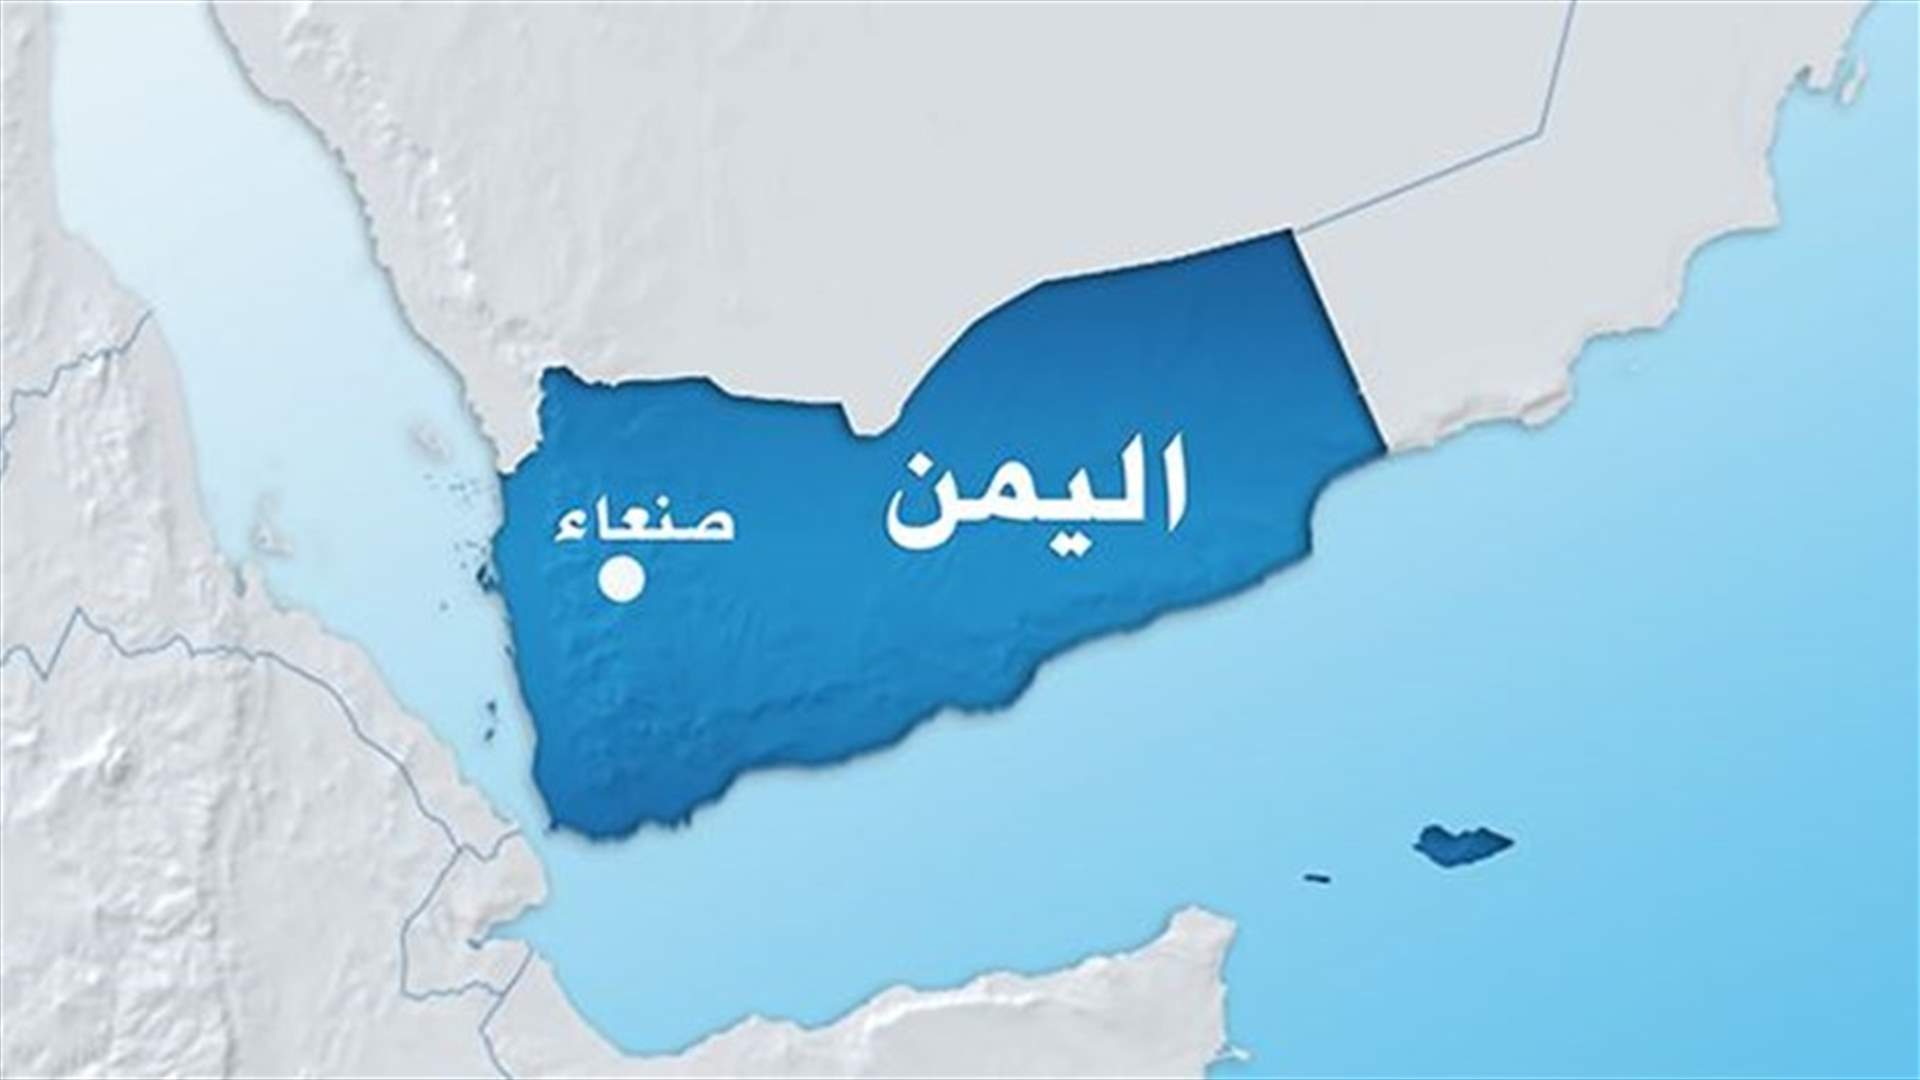 القاعدة سيطرت على مستشفى في جنوب اليمن لمعالجة جرحاها